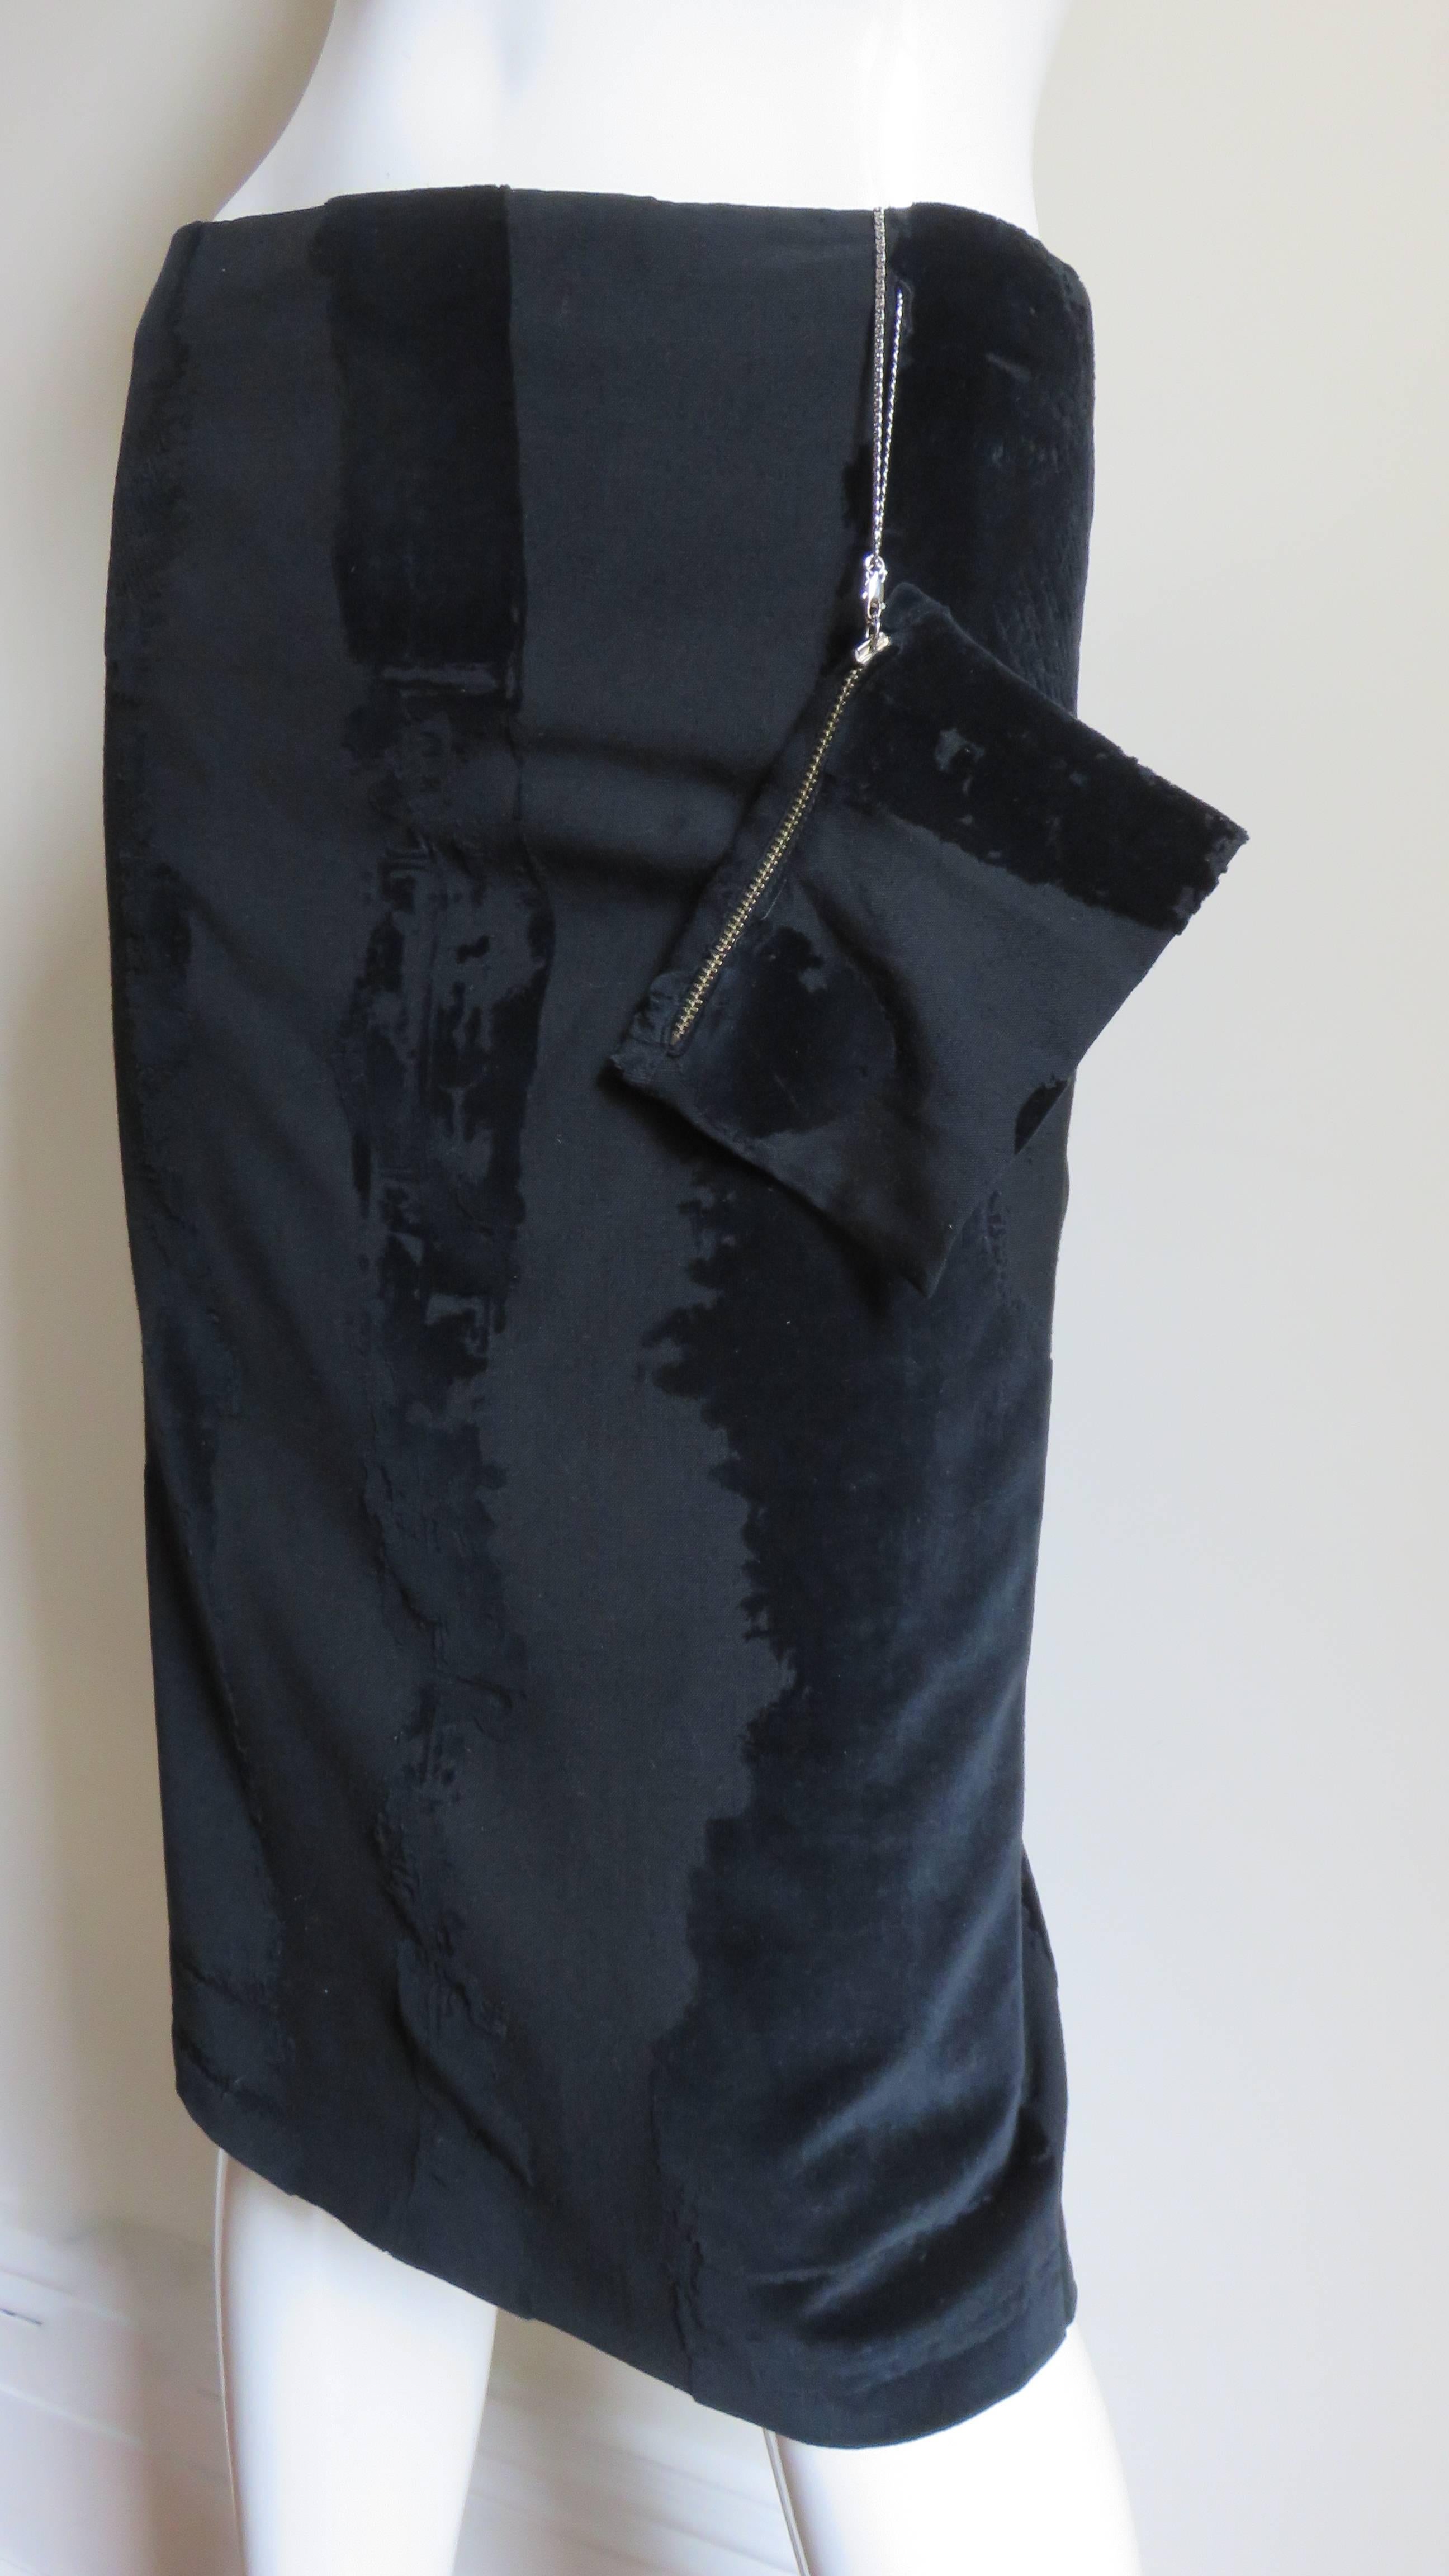 Une fabuleuse jupe en velours noir brûlé de Jean Paul Gaultier.   Il est de style crayon avec de larges rayures verticales abstraites en velours et une petite pochette zippée attachée par une chaîne à la taille.  Entièrement doublé, il est doté